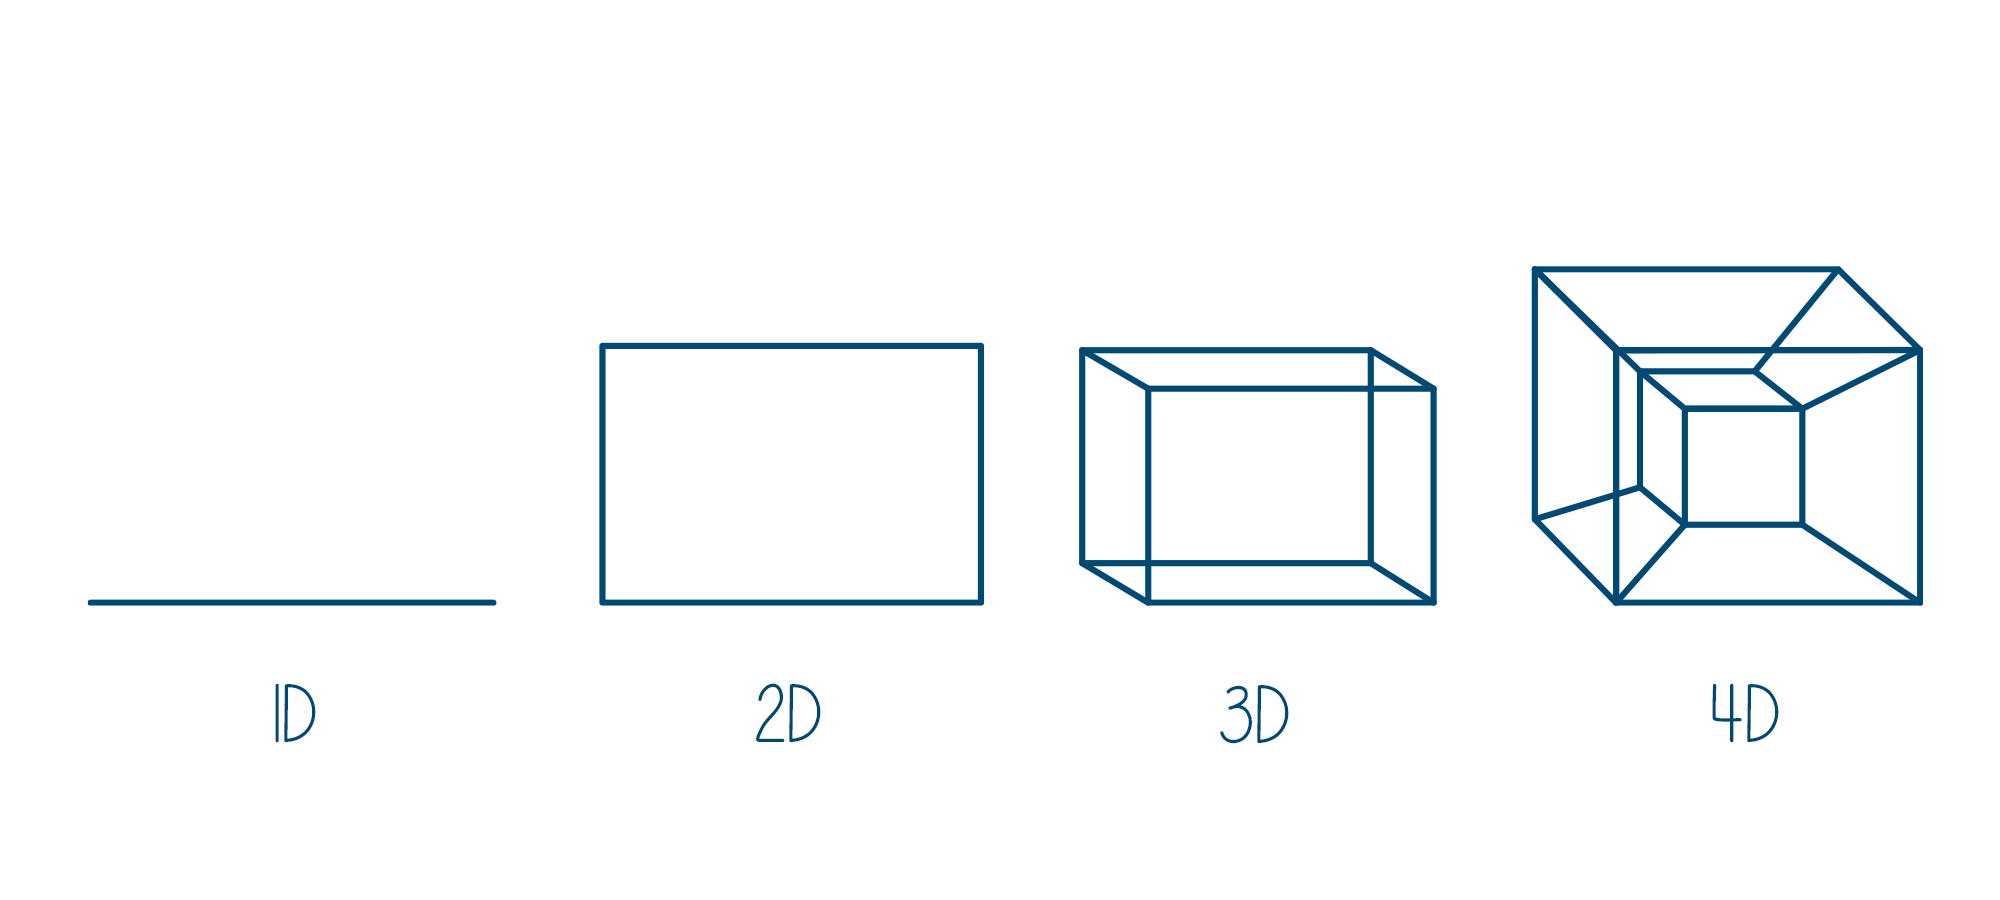 Principle of 4D Printing